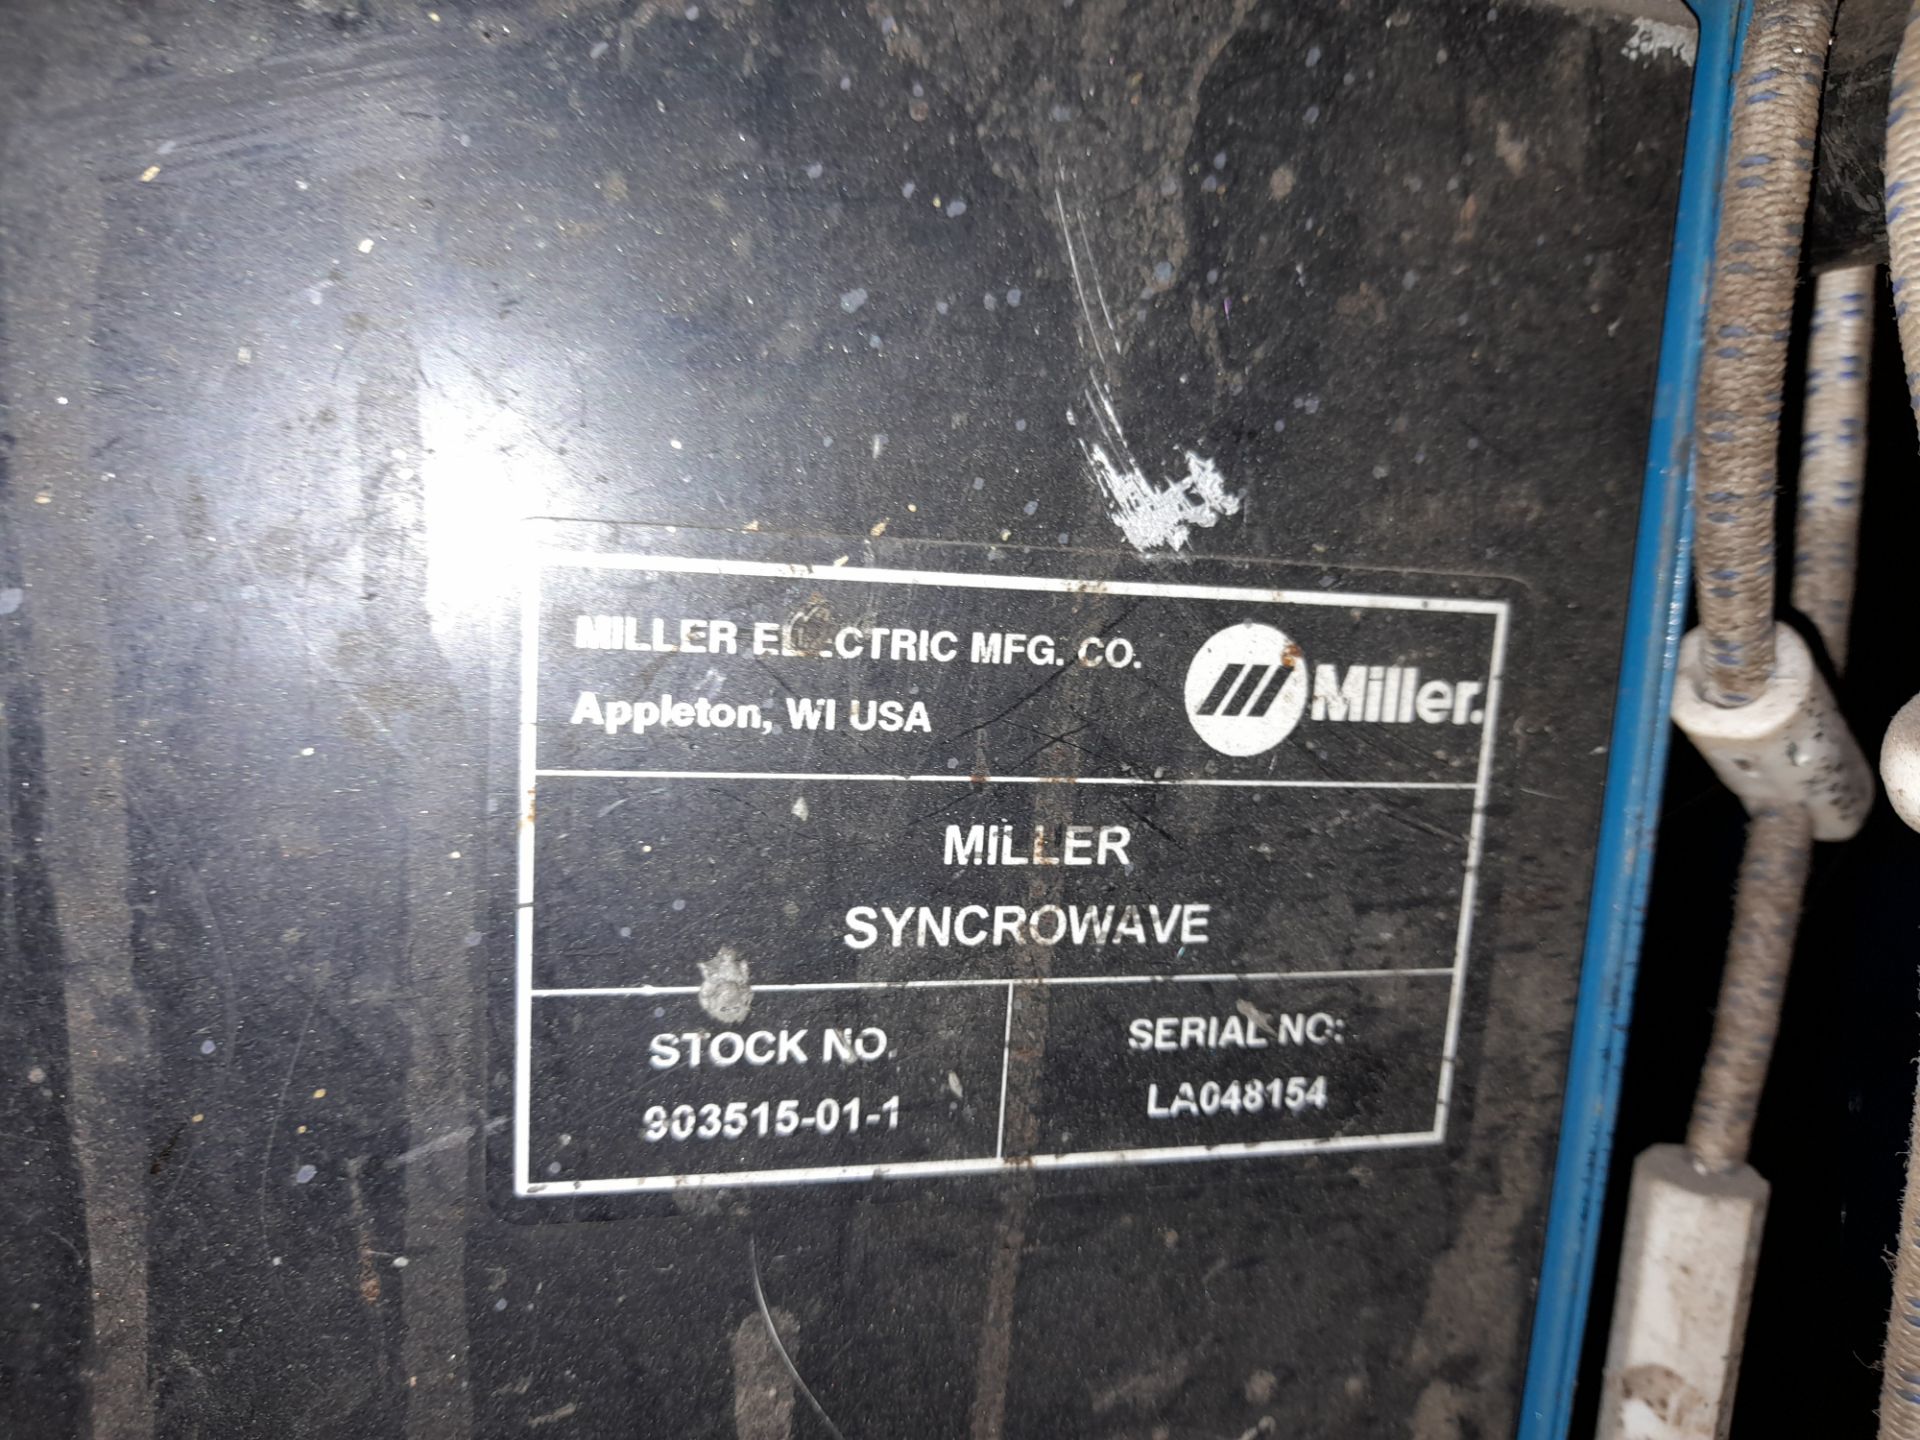 Miller Syncrowave 350LX tig welding set - Image 3 of 4